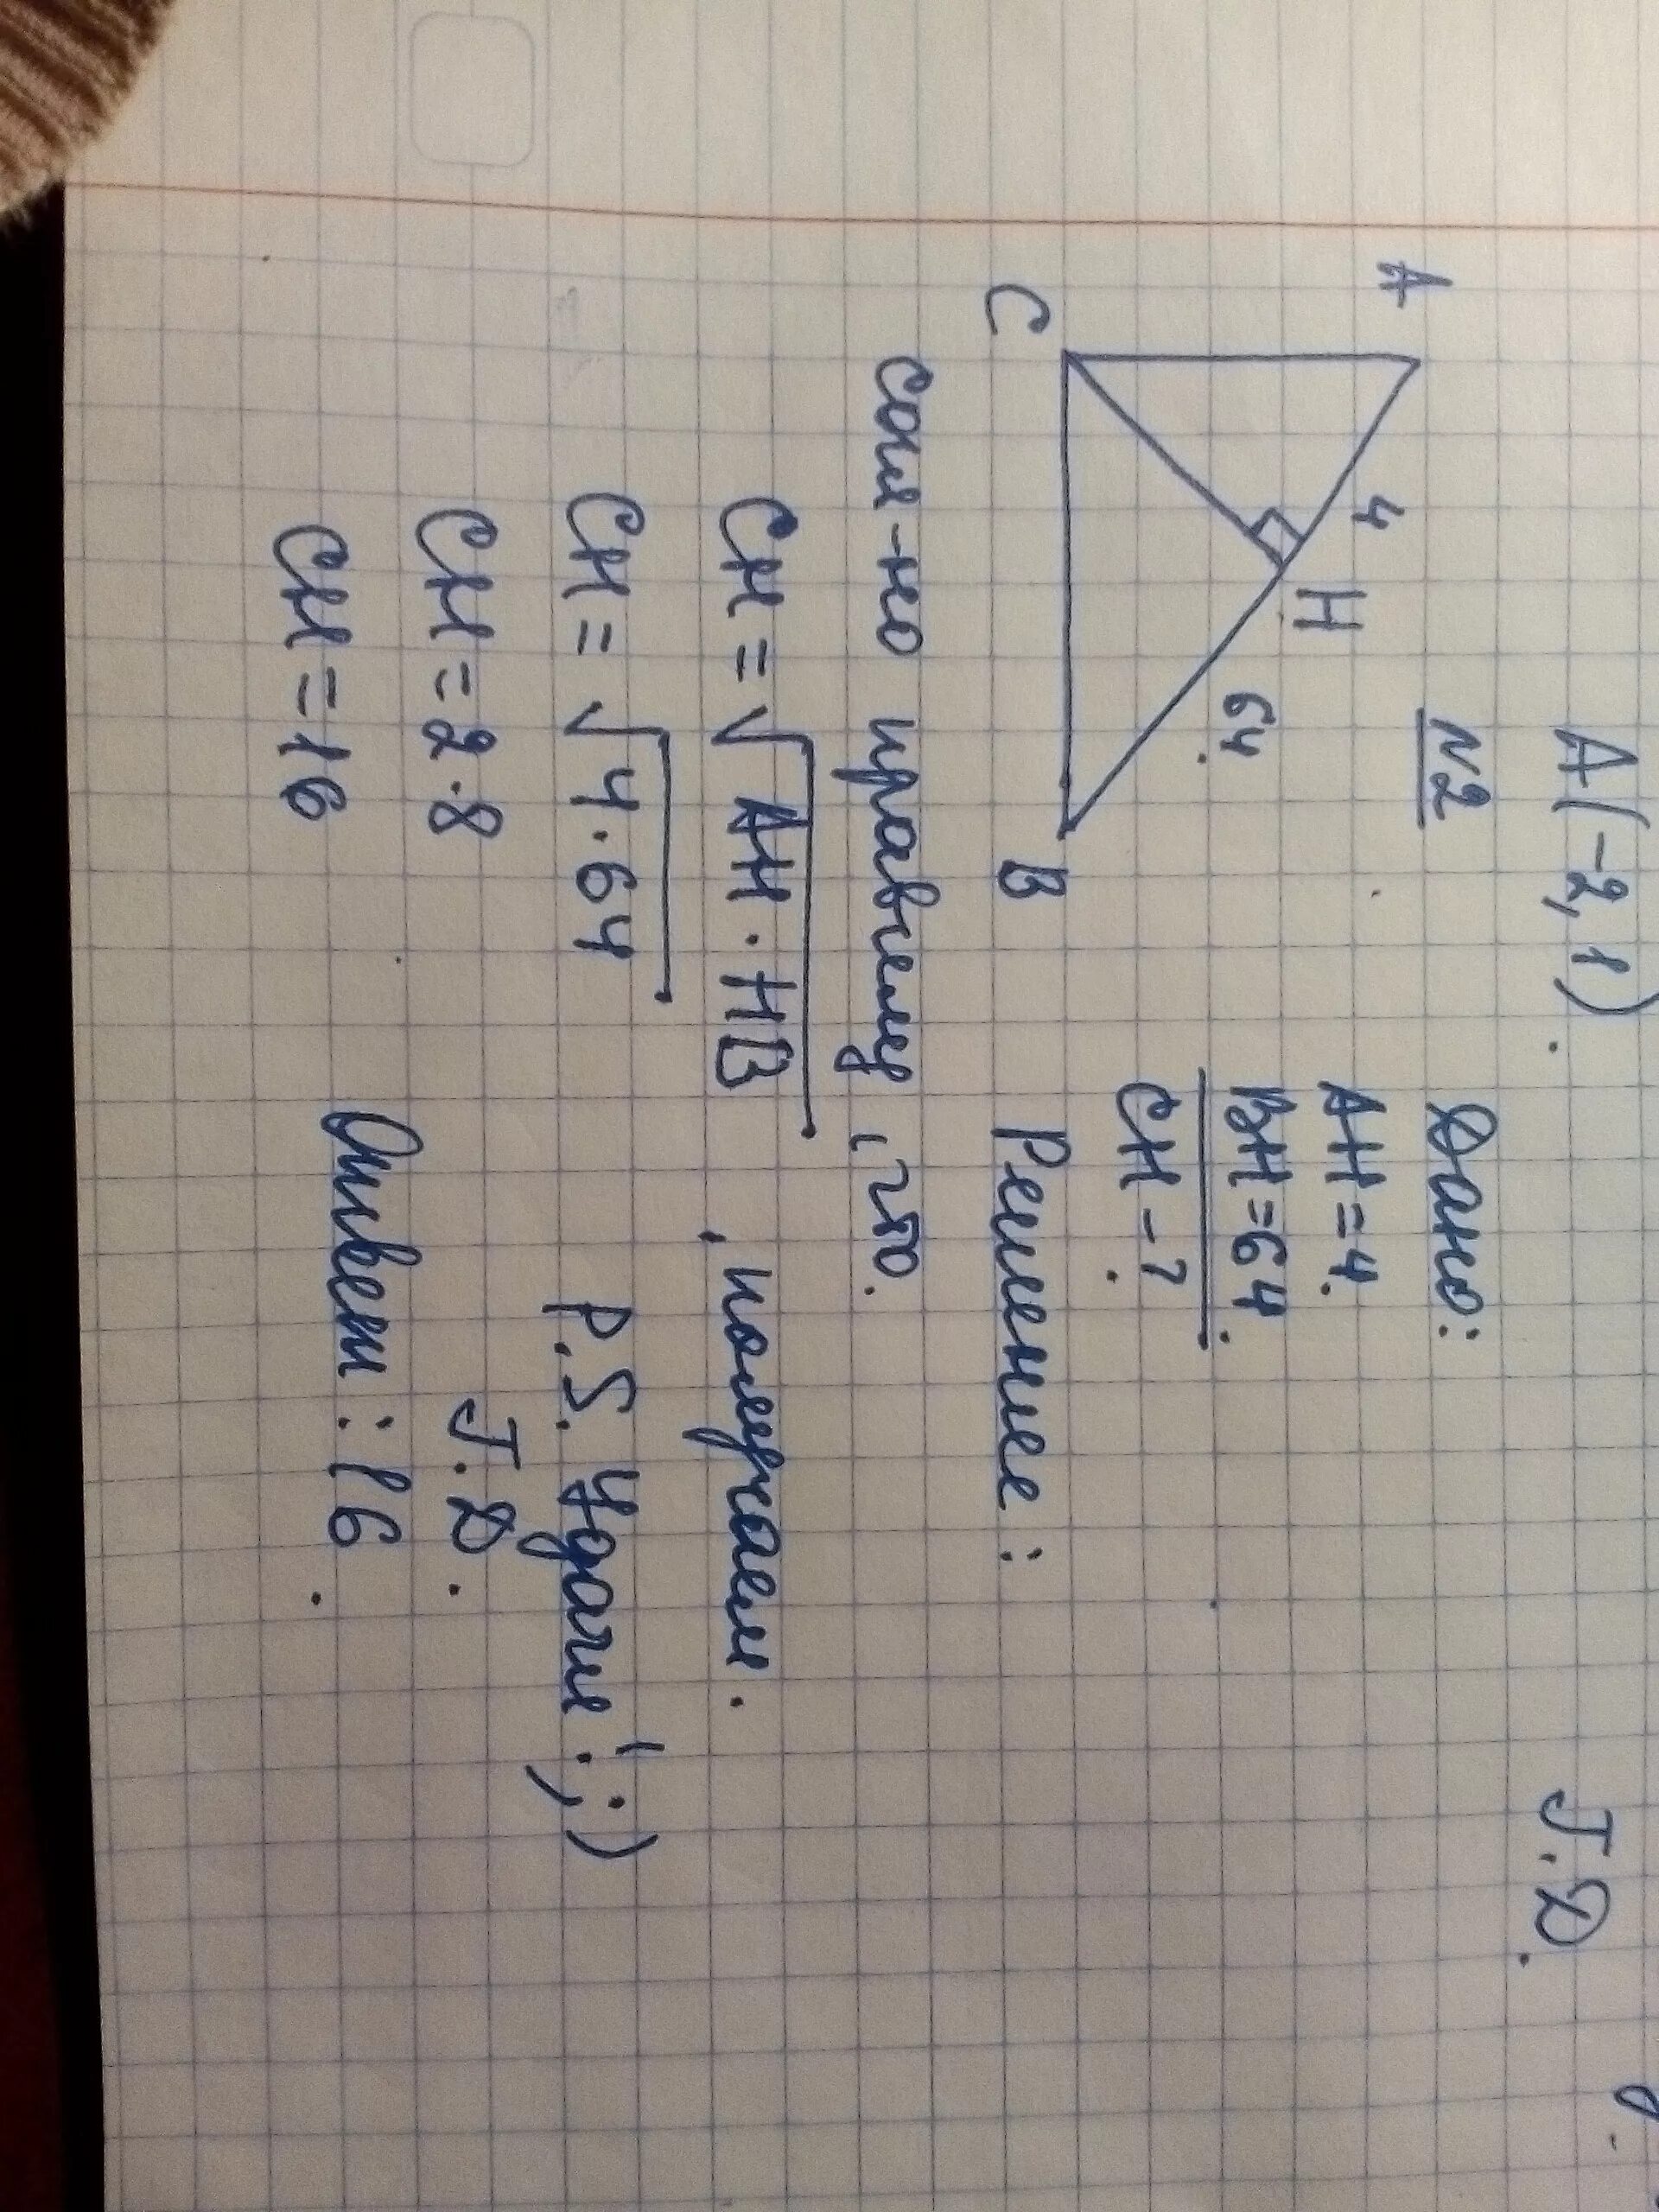 Ch ah hb. Прямоугольный треугольник с гипотенузой ab. В прямоугольном треугольнике ABC гипотенуза ab. На гипотенузу прямоугольного треугольника опущена высота СН. На гипотенузу АВ прямоугольного треугольника АВС опущена высота.